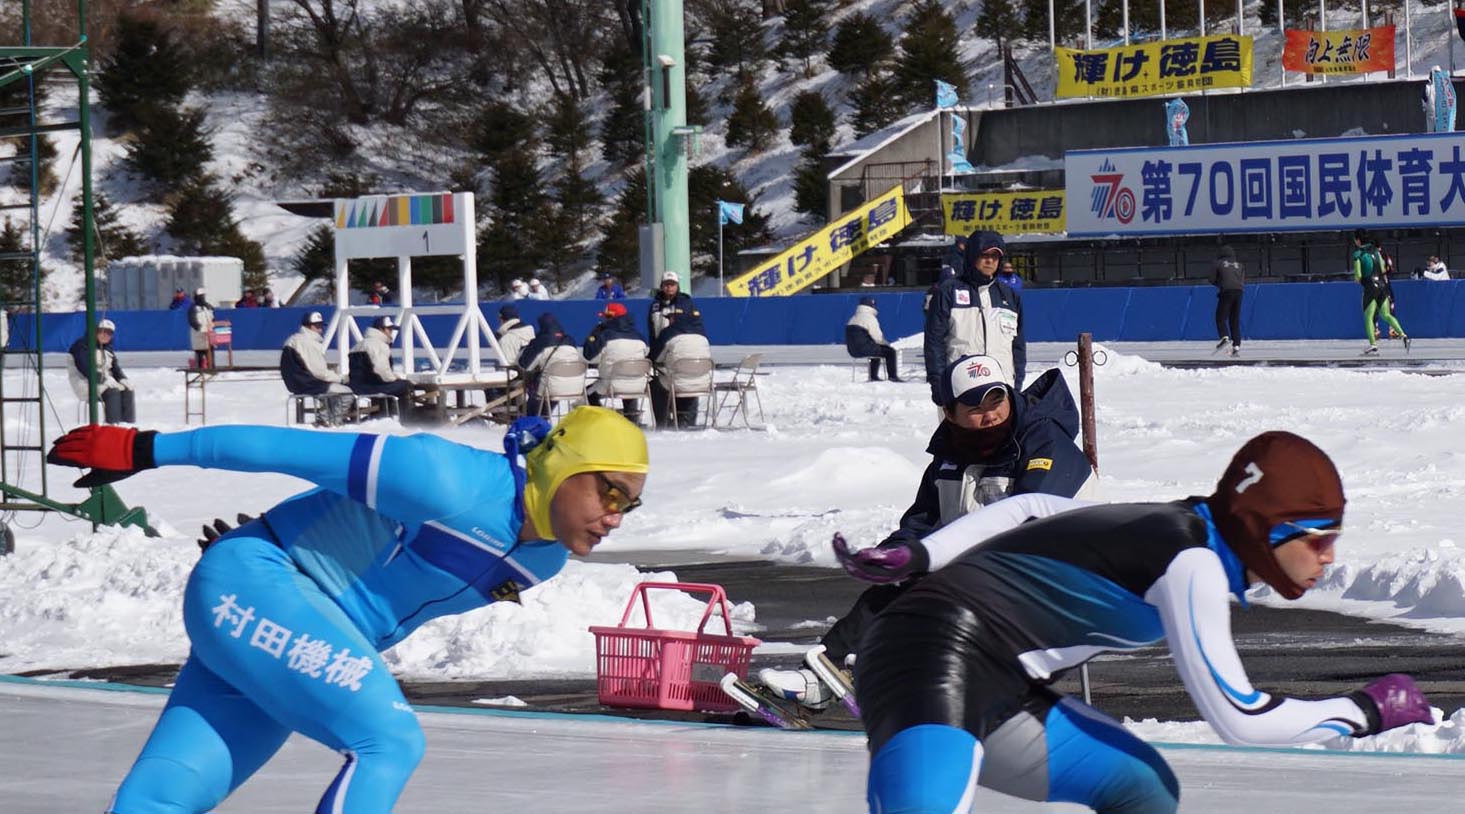 喜多秀明選手-5000m予選.背景に「輝け 徳島」の旗（帽子は茶色）